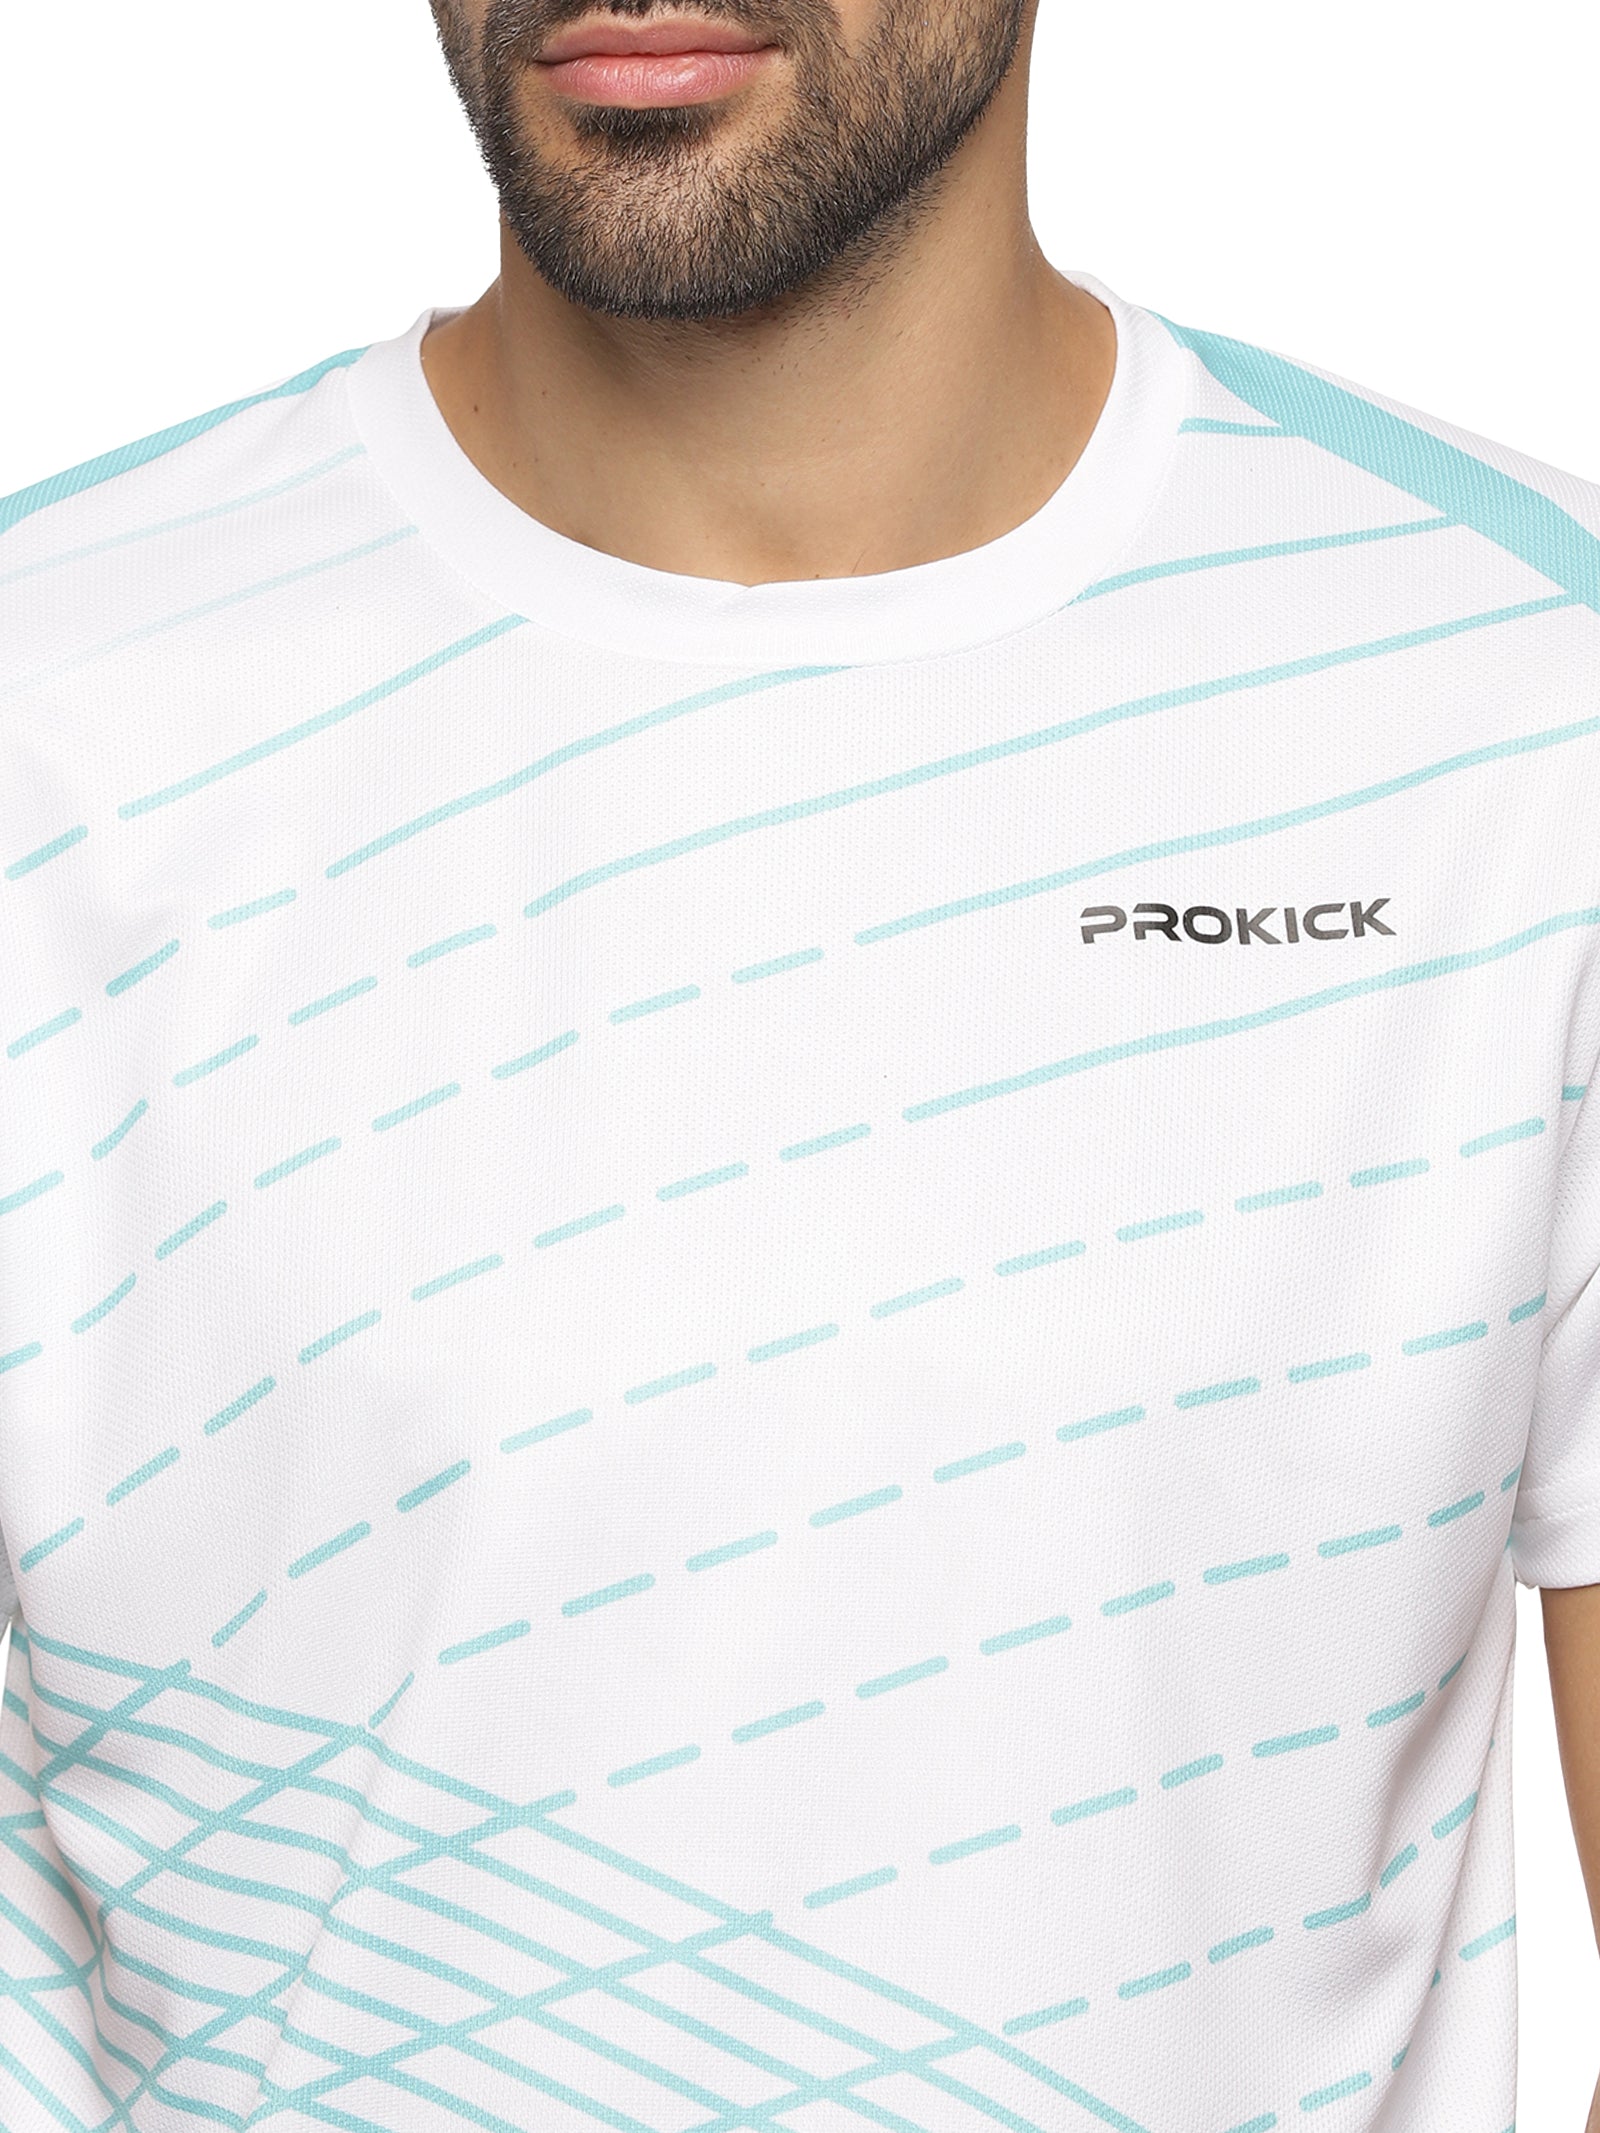 Prokick RNT-HS001 Round Neck Half Sleeves Sports Tshirt - Best Price online Prokicksports.com